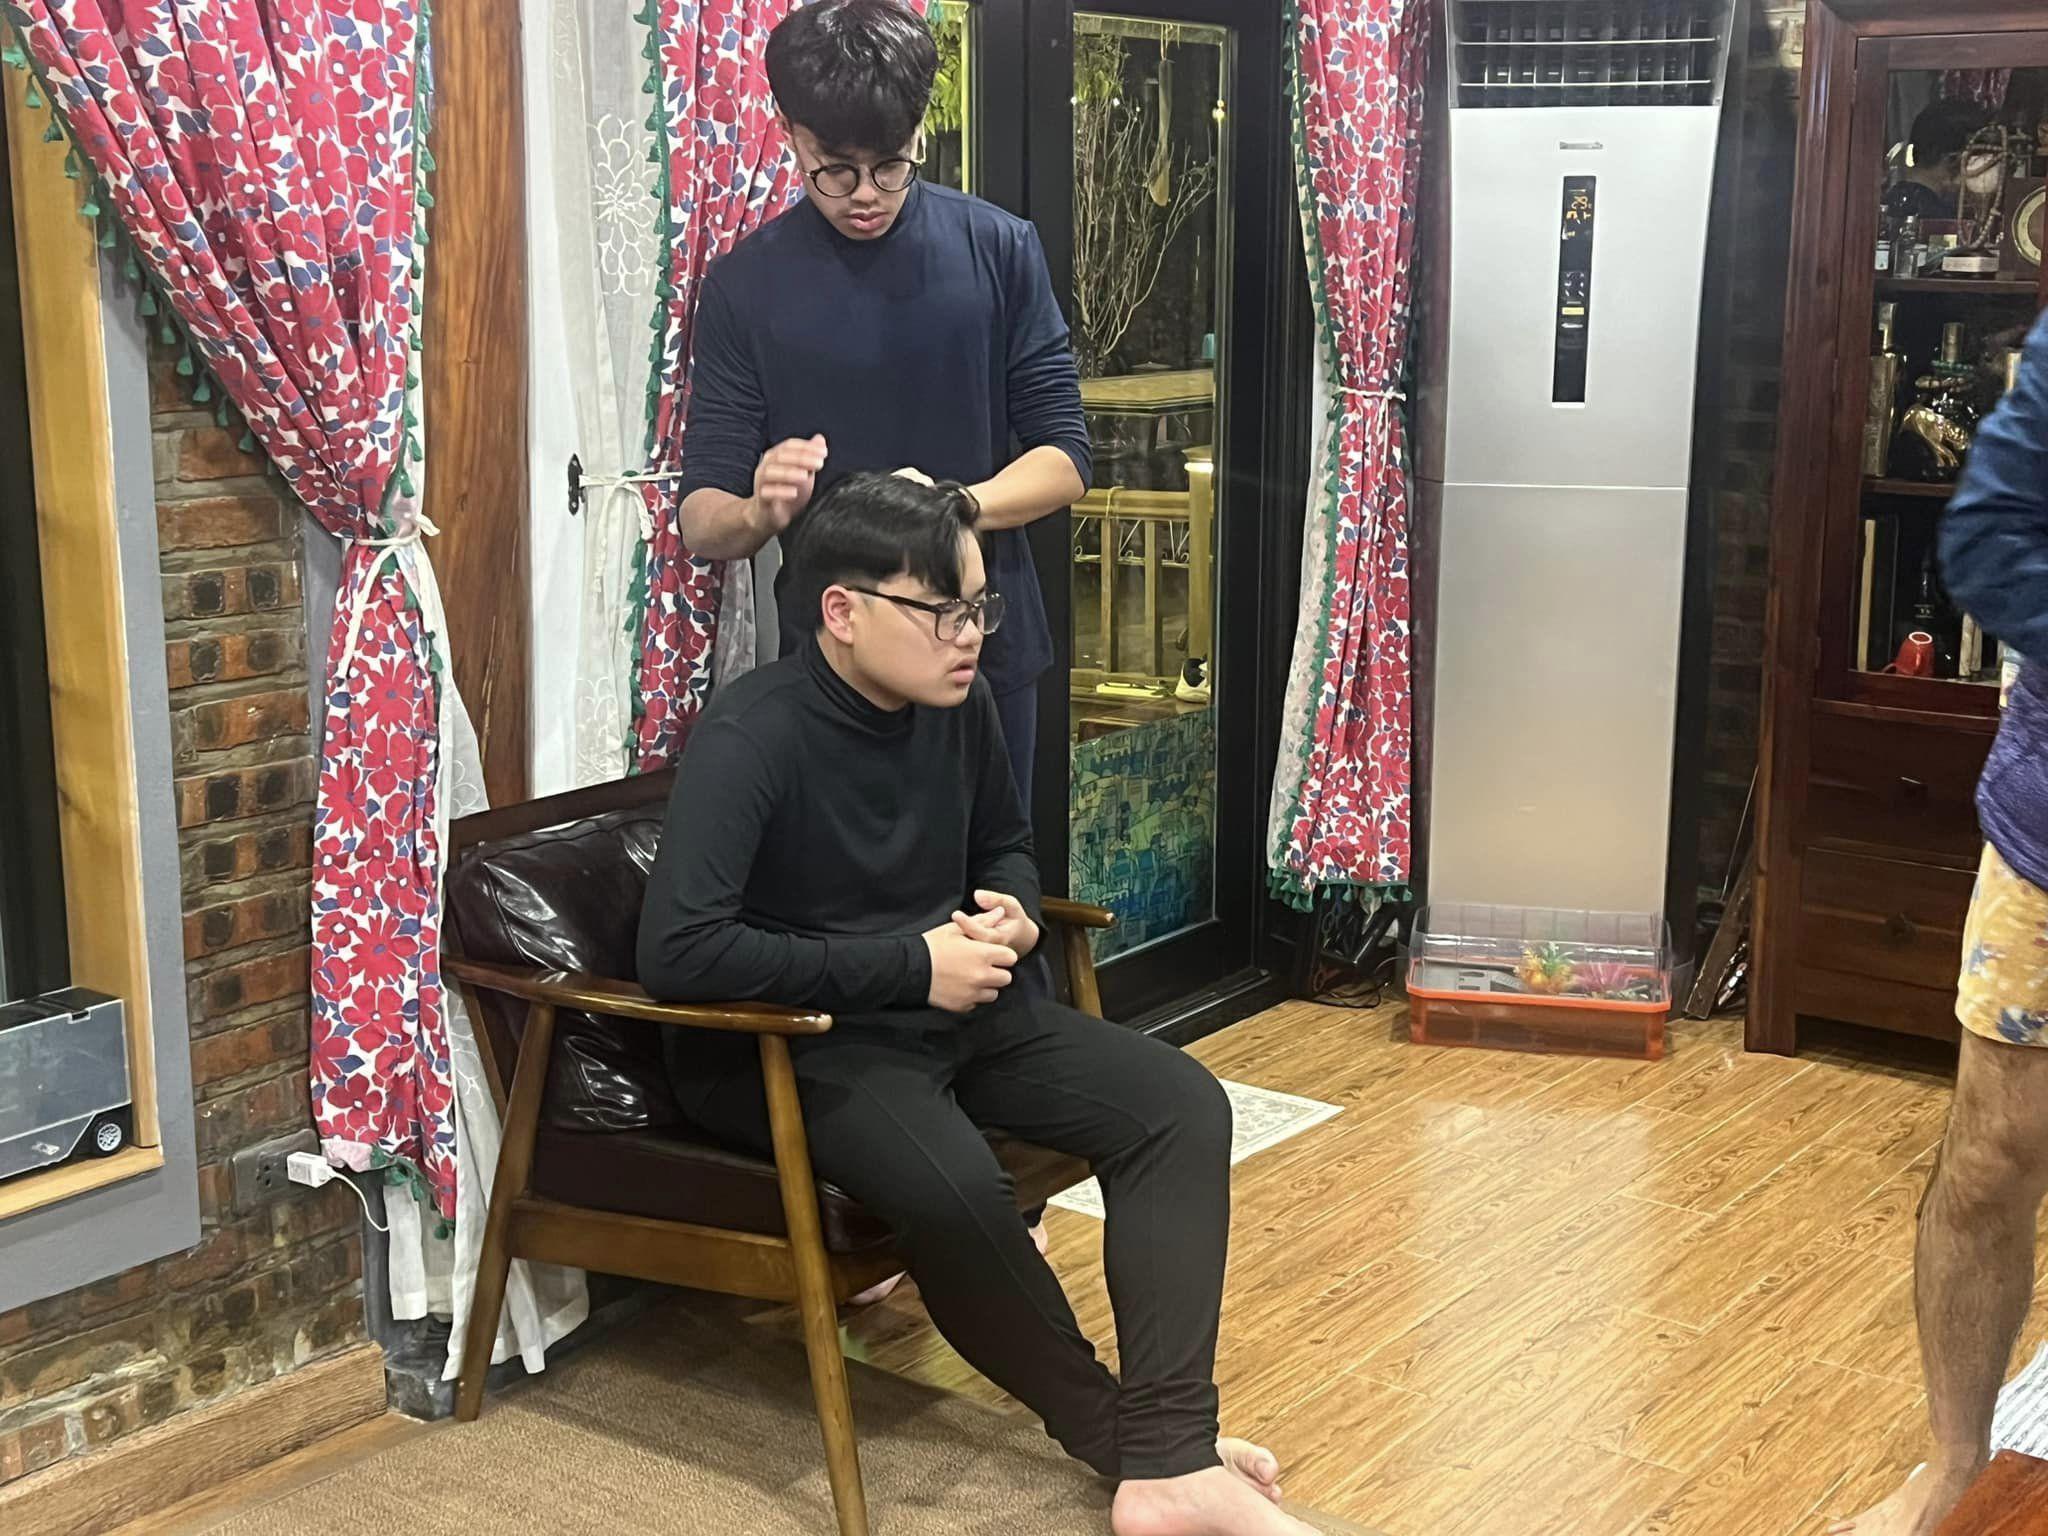 Bi Béo được anh trai Minh Bủm sửa sang đầu tóc. Nhìn sự chăm sóc của 2 anh em dành cho nhau mà người hâm mộ thấy ấm lòng.